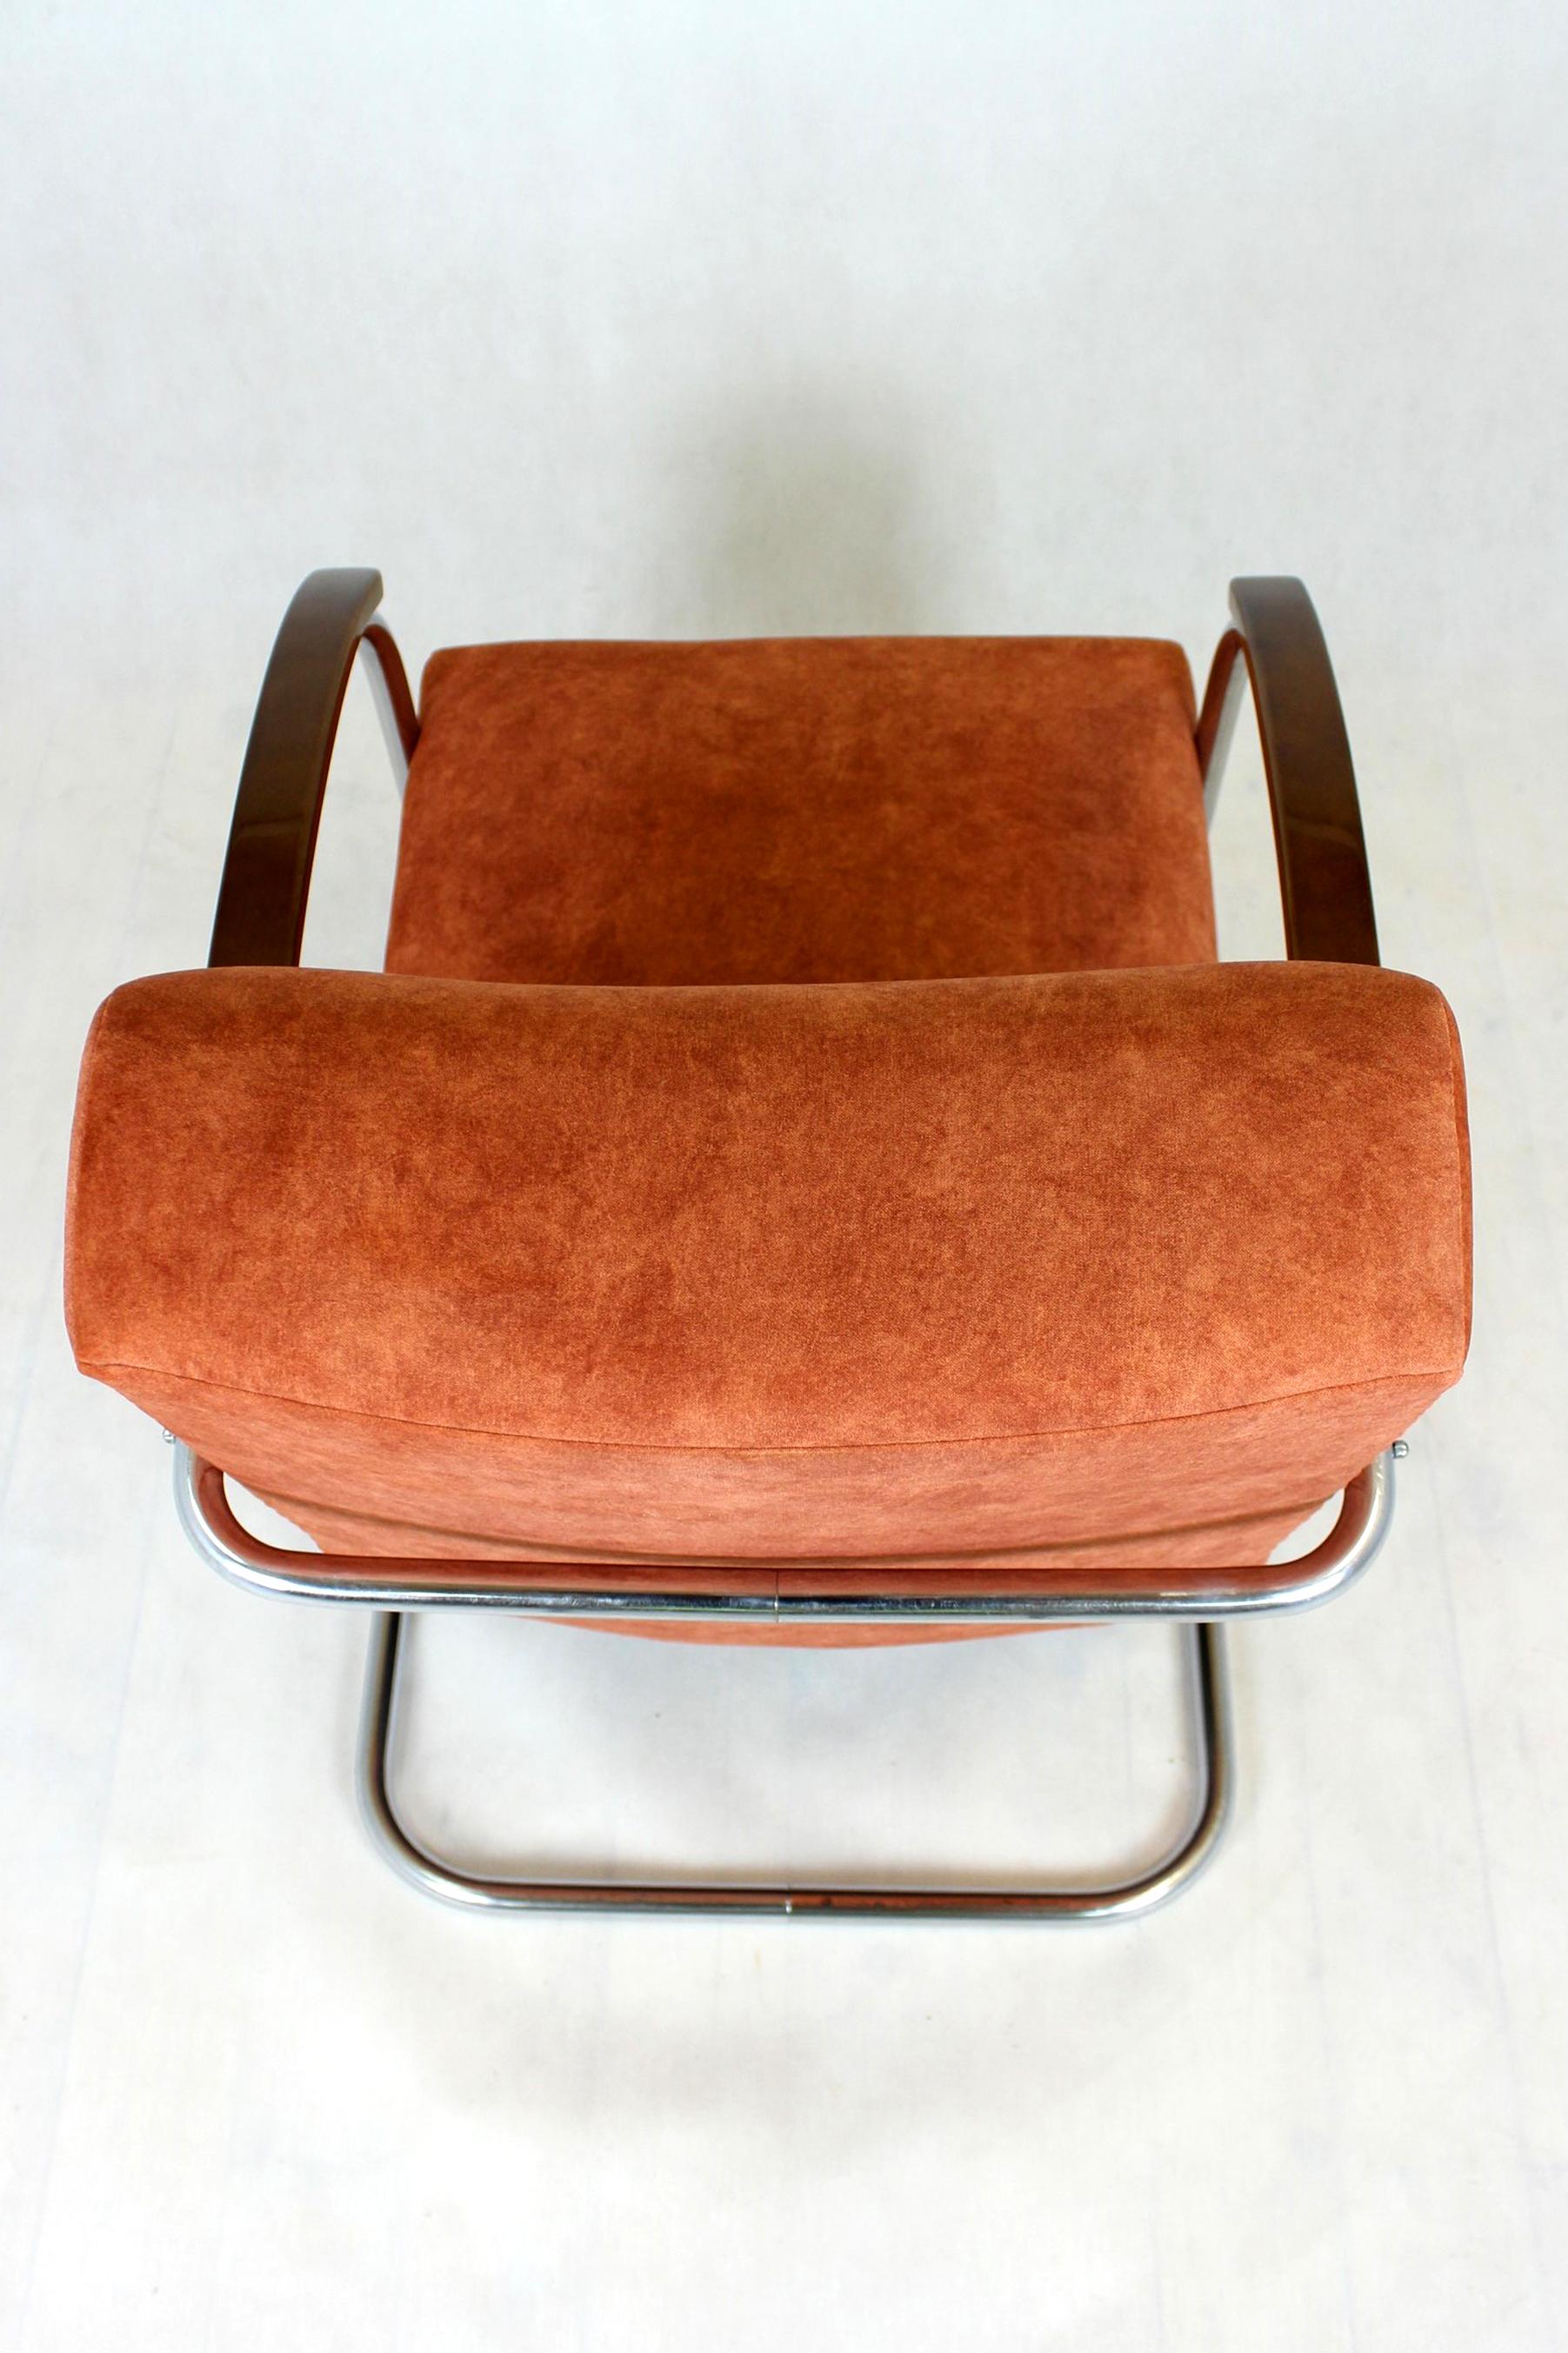 Restored Bauhaus Chromed Tubular Steel Armchair by Mücke Melder, 1930s For Sale 4